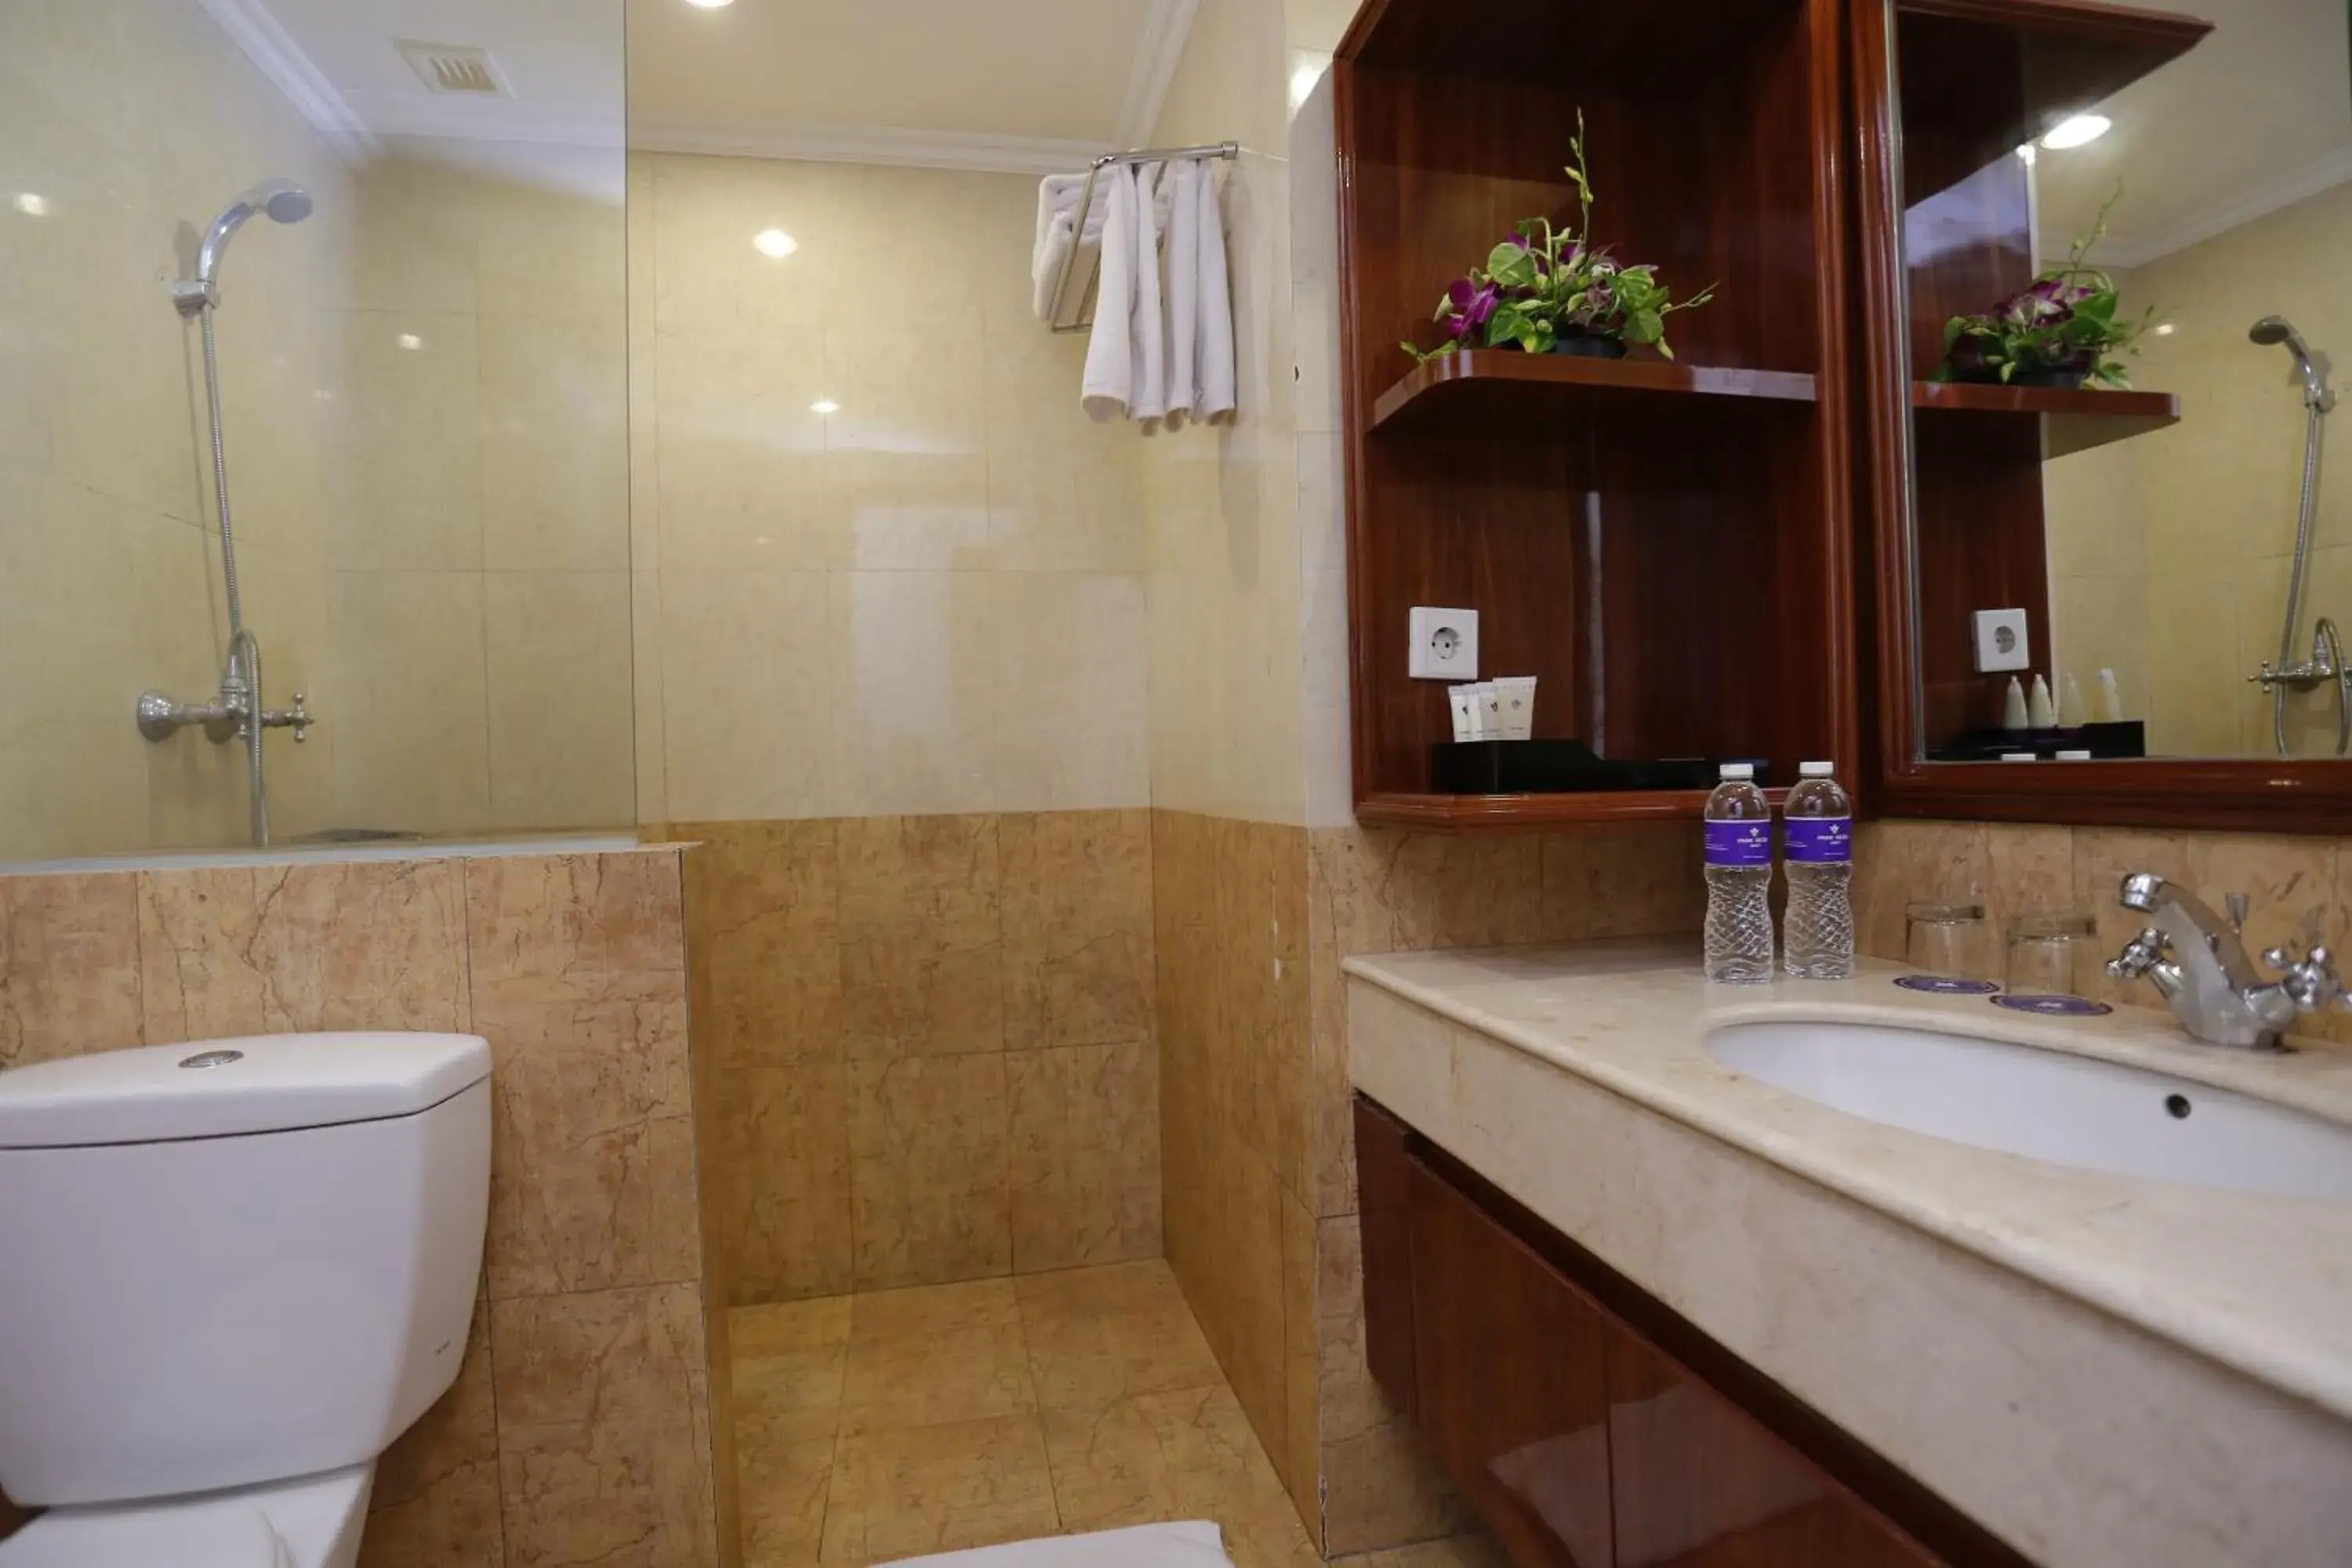 Bathroom in Park Regis Arion Kemang